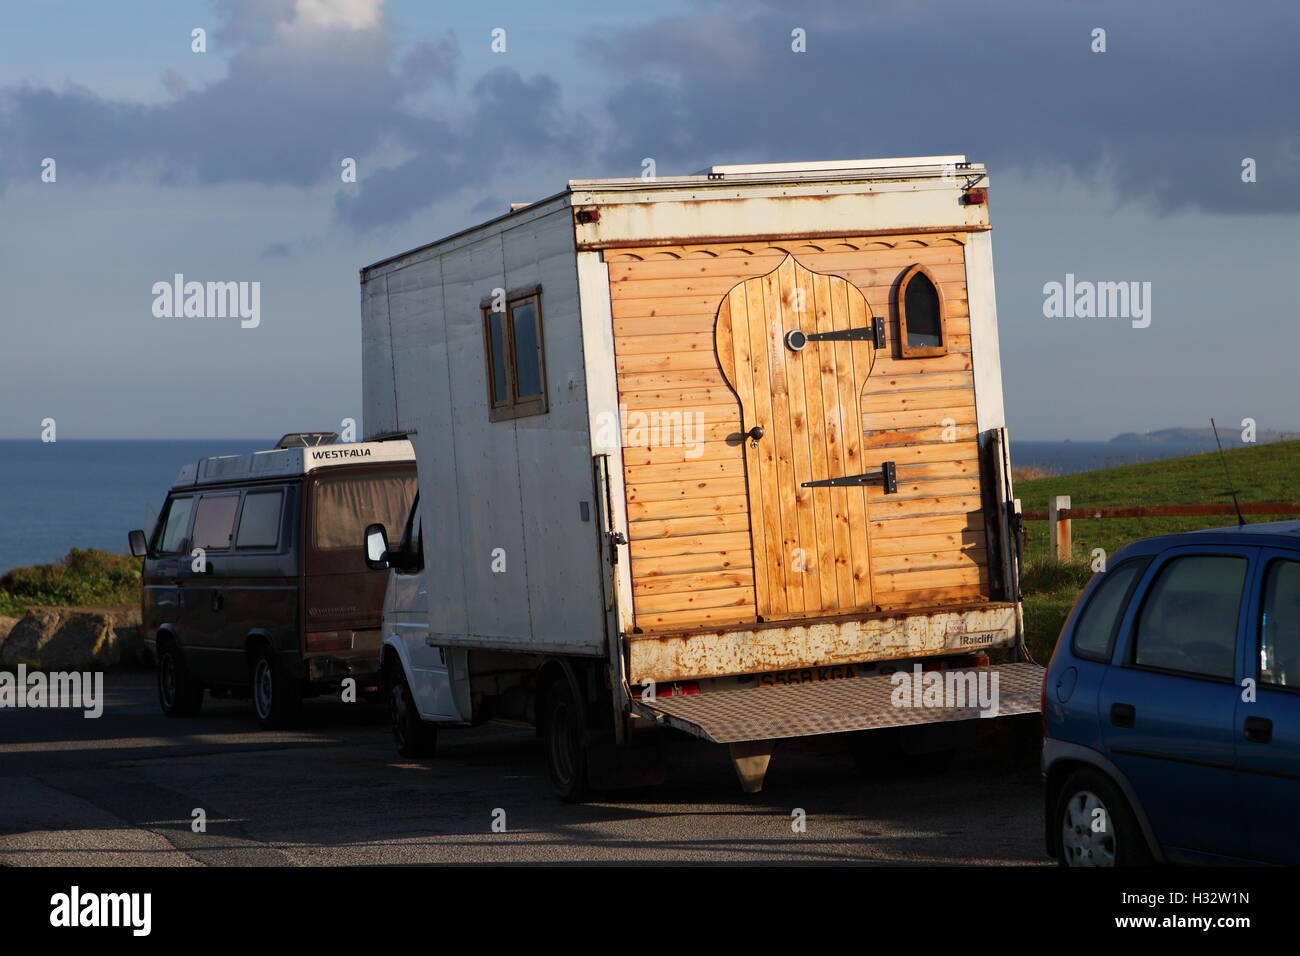 PENTIRE, Newquay, Cornwall, Regno Unito - 3 ottobre 2016: Un gypsy caravan parcheggiato su pentire a Newquay. Foto Stock